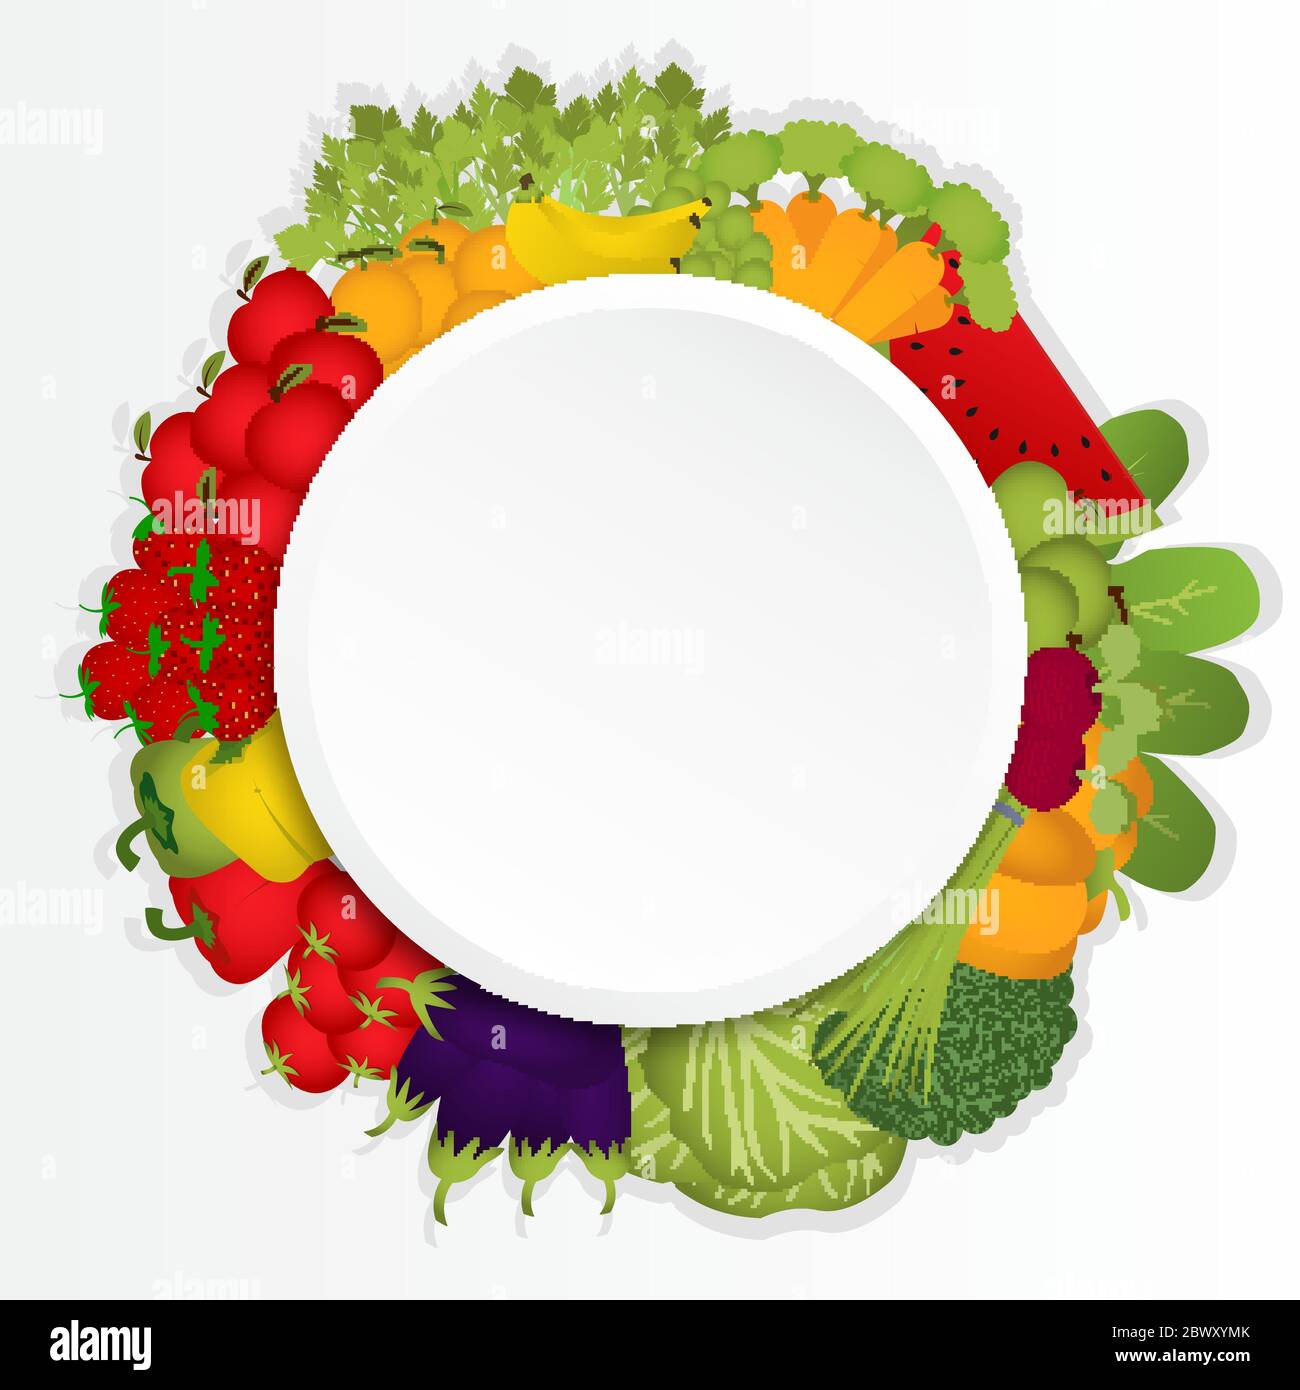 Bearbeitbarer Kreis von Obst, Gemüse und Hülsenfrüchten. Stock Vektor